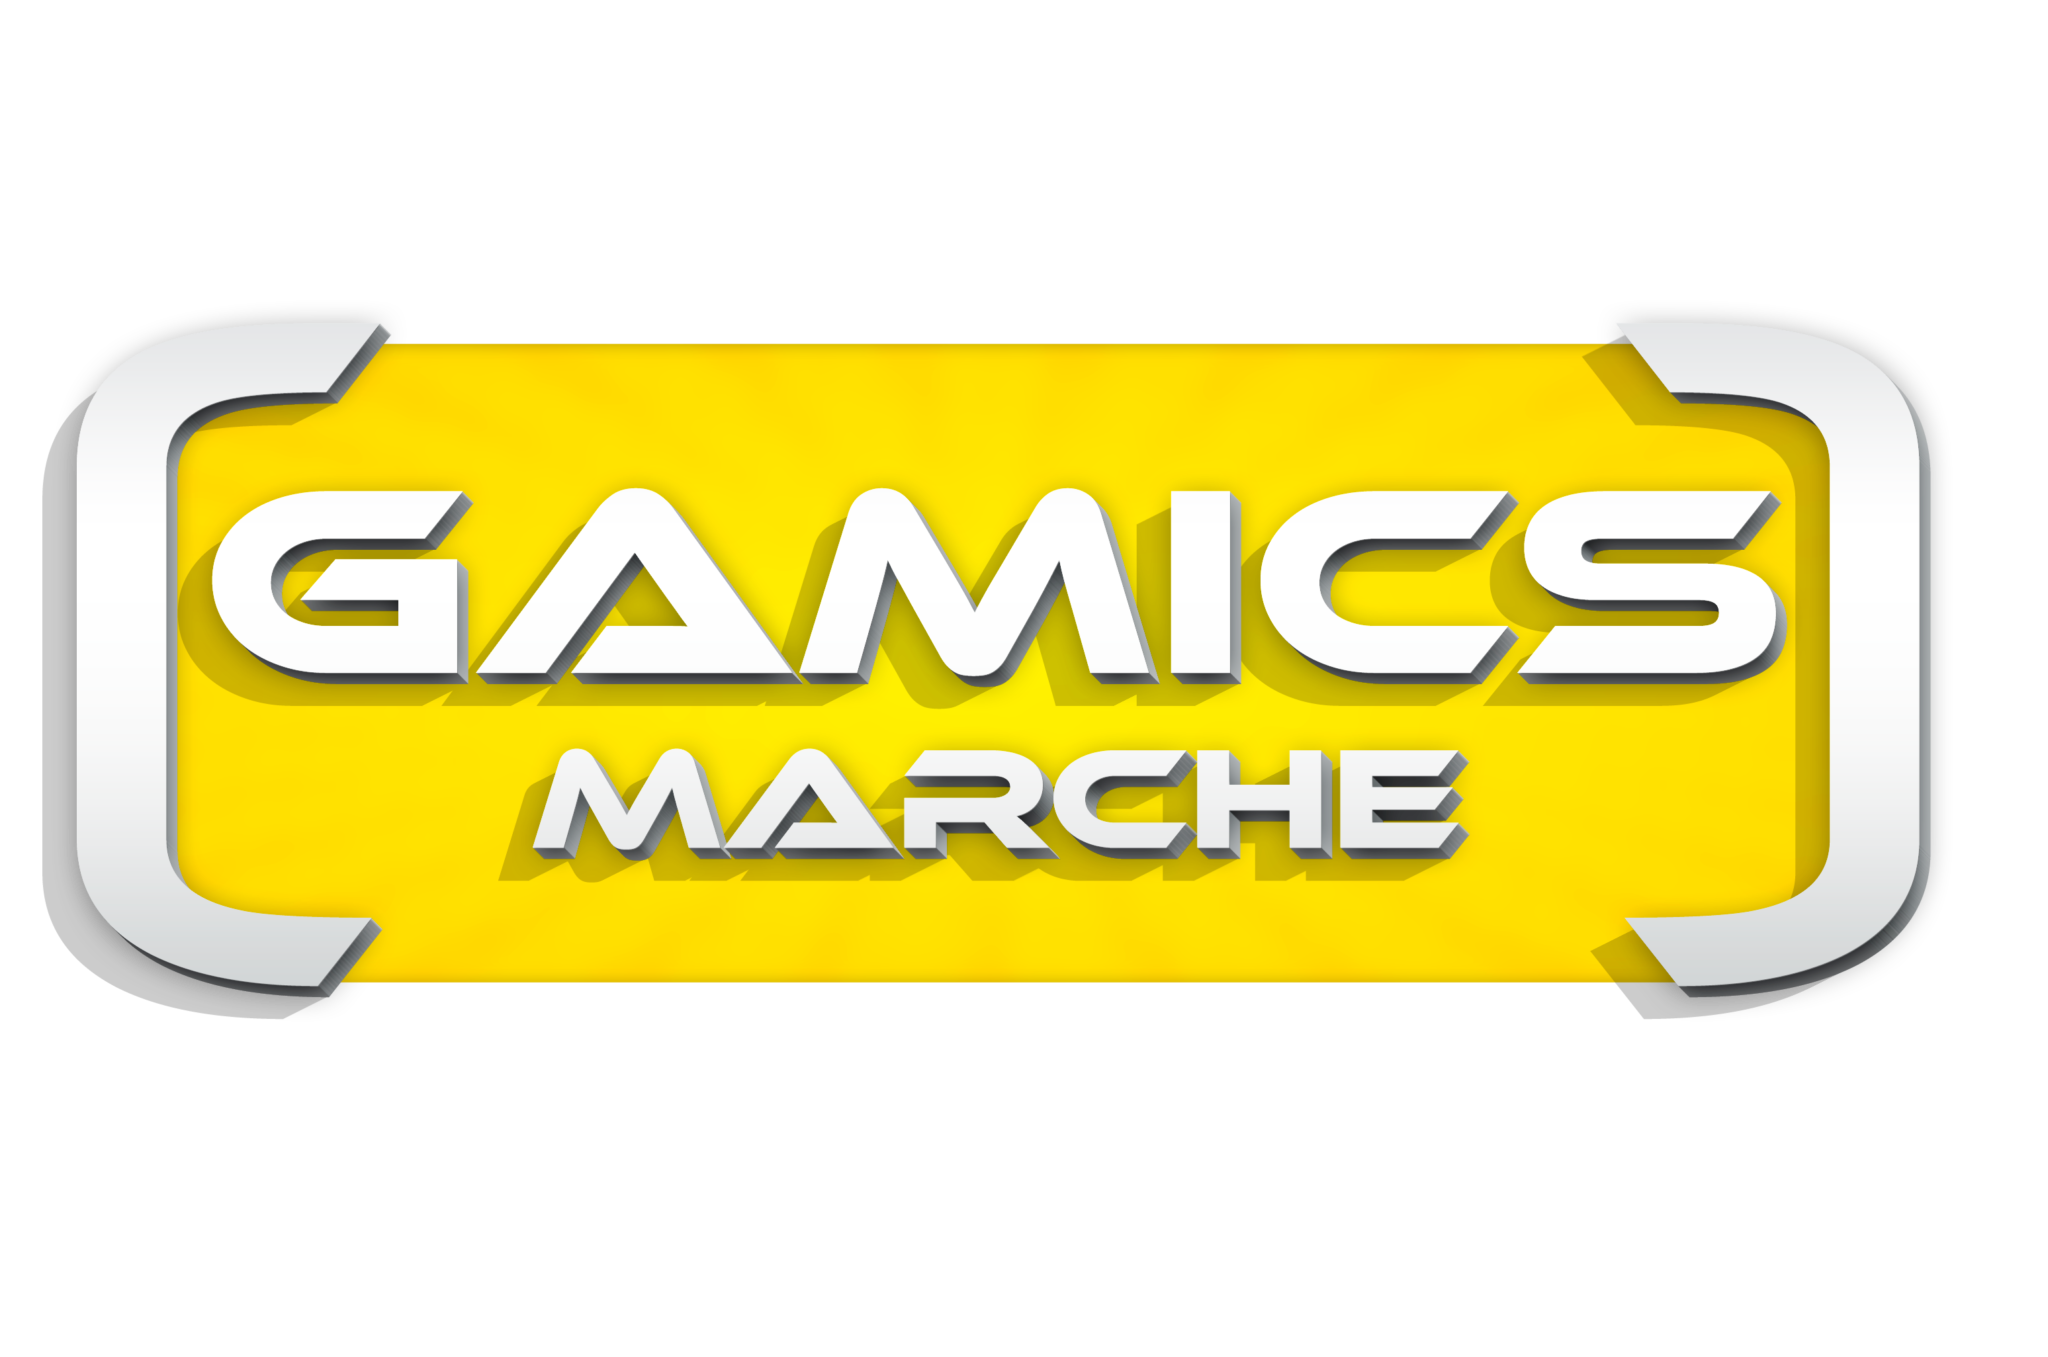 Gamics Marche: SABATO 2 E DOMENICA 3 SETTEMBRE 2023 AL FERMO FORUM